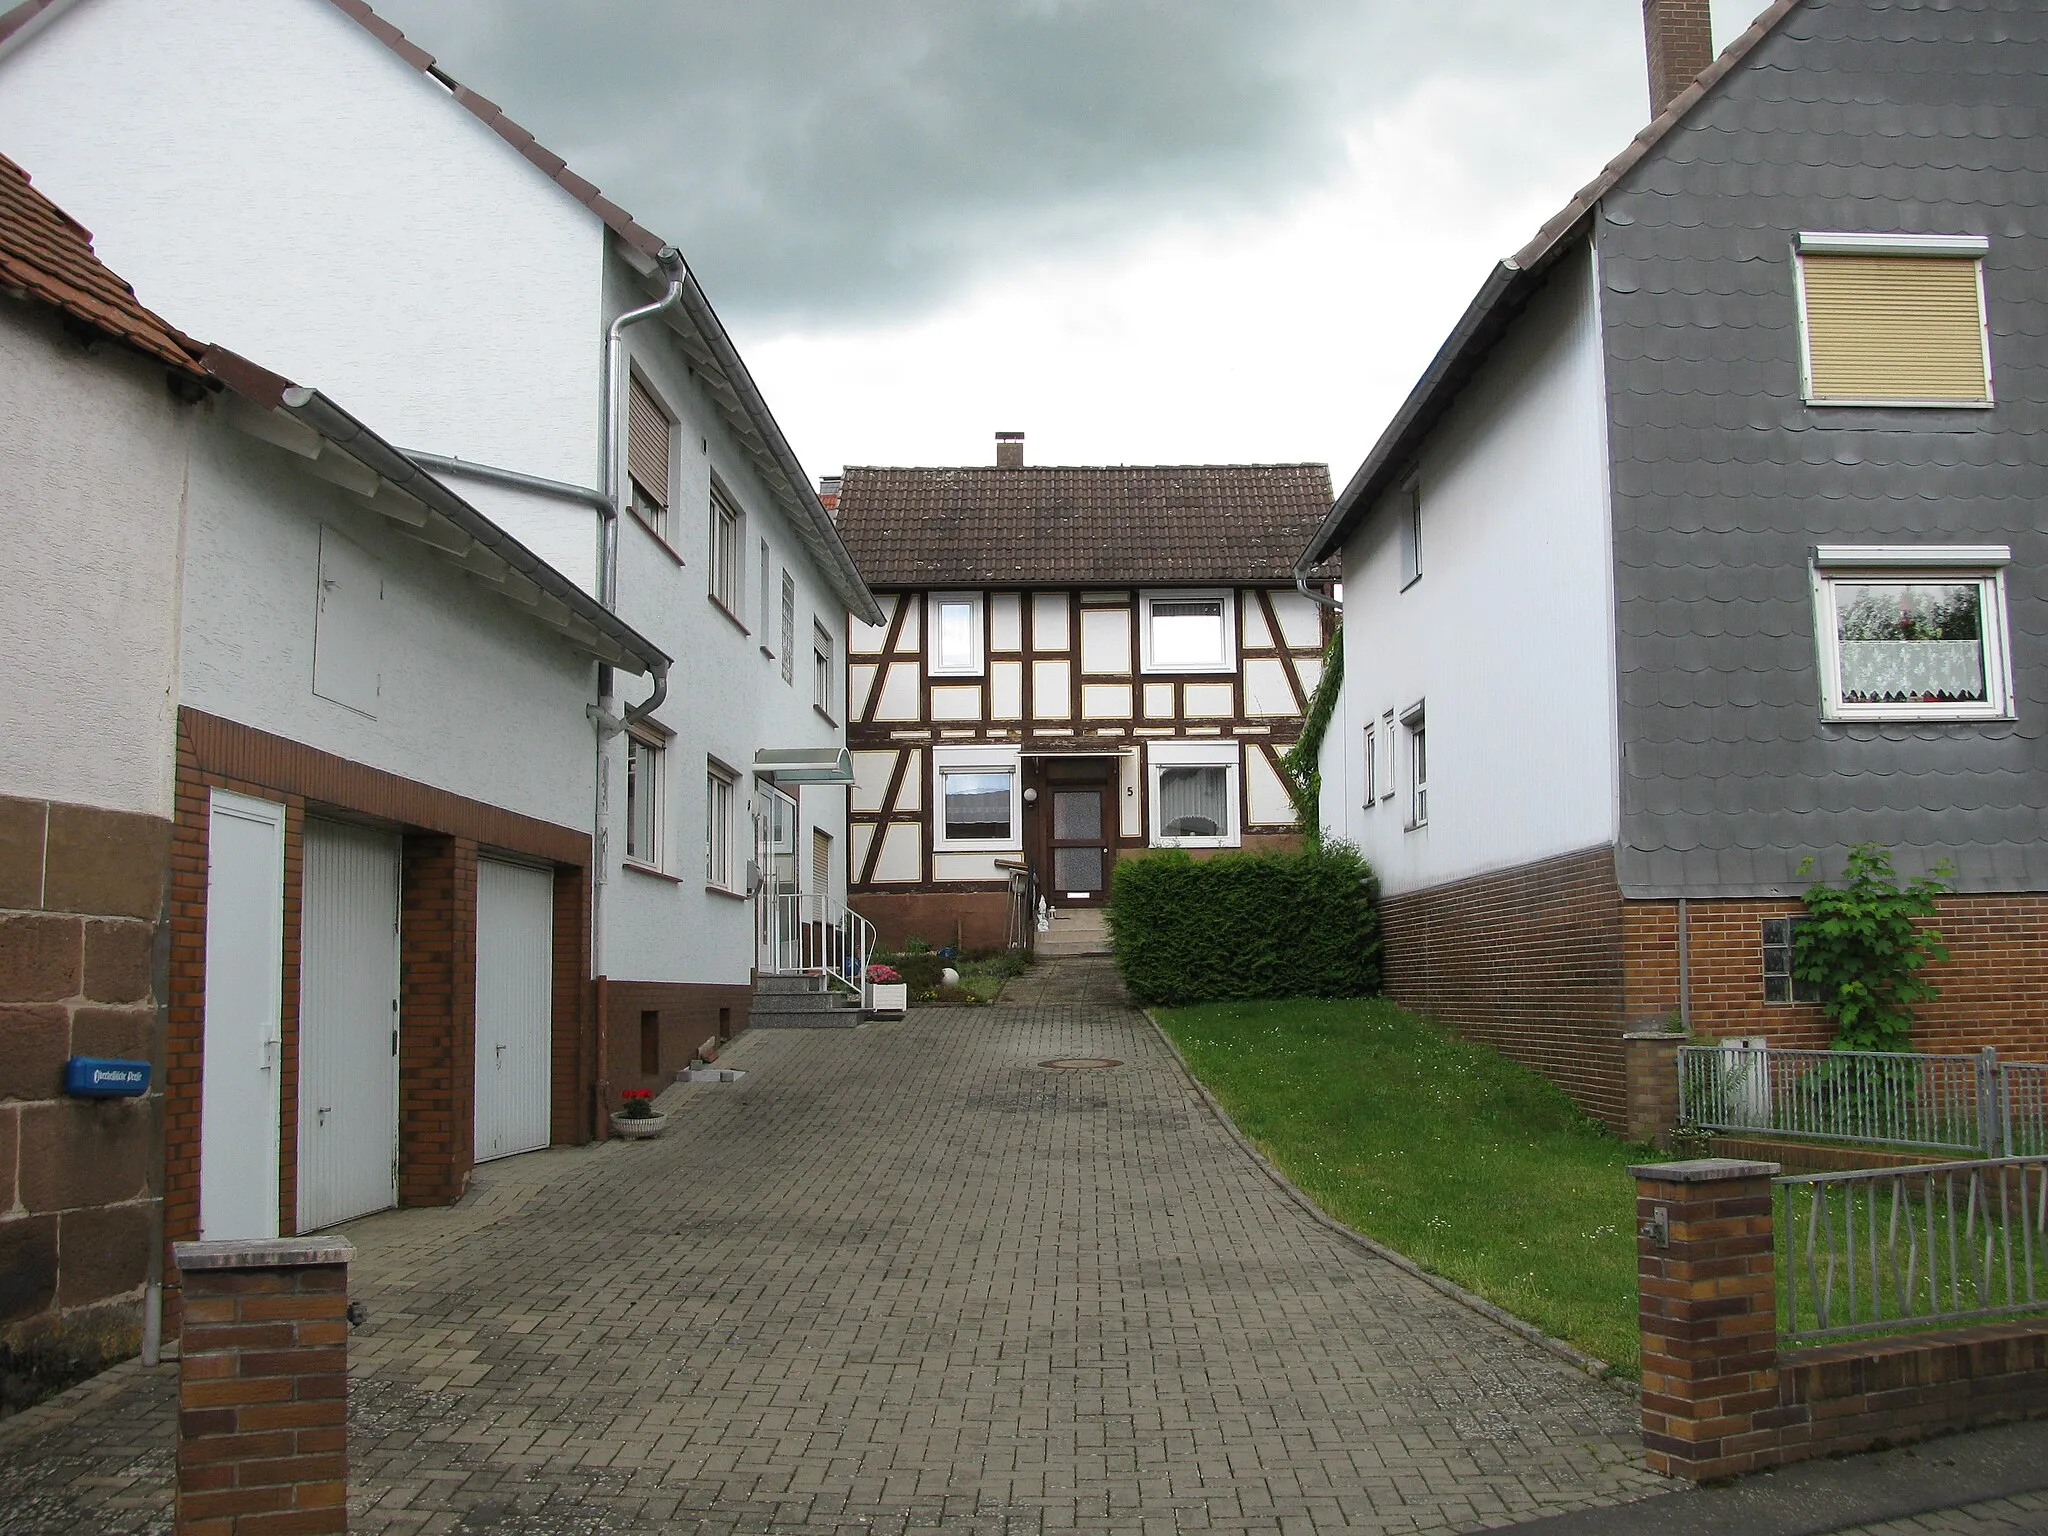 Photo showing: Blick in den Hof zwischen den Häusern Ohmtalstraße 3 links, Nr. 5 hinten und die Rückseite des Hauses Nr. 7 rechts, die Stolpersteine liegen vor der Grundstücksmauer vorne rechts